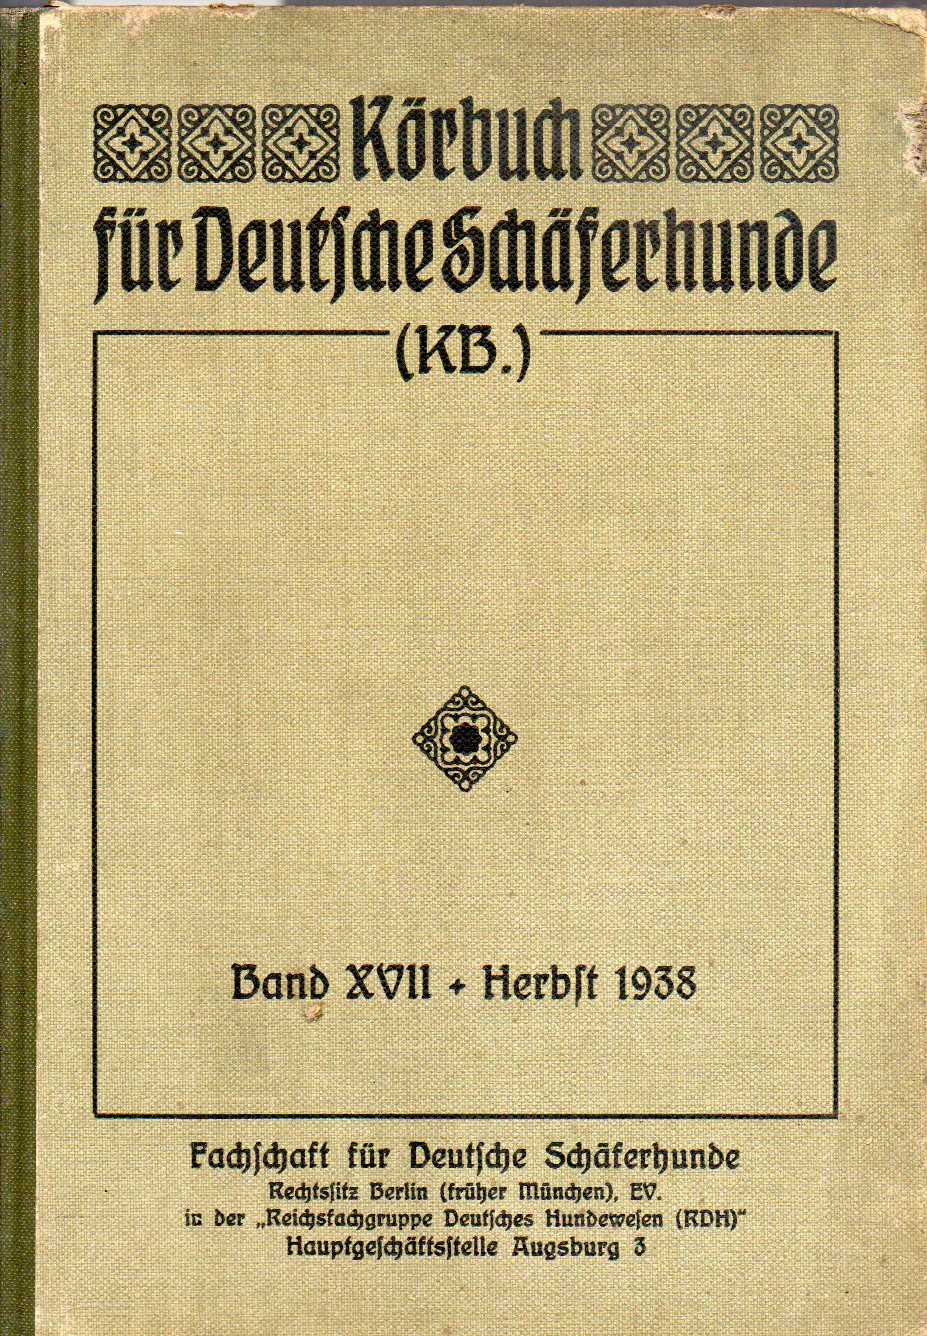 Fachschaft für deutsche Schäferhunde  Körbuch für Deutsche Schäferhunde Band XVII Ankörung Herbst 1938 